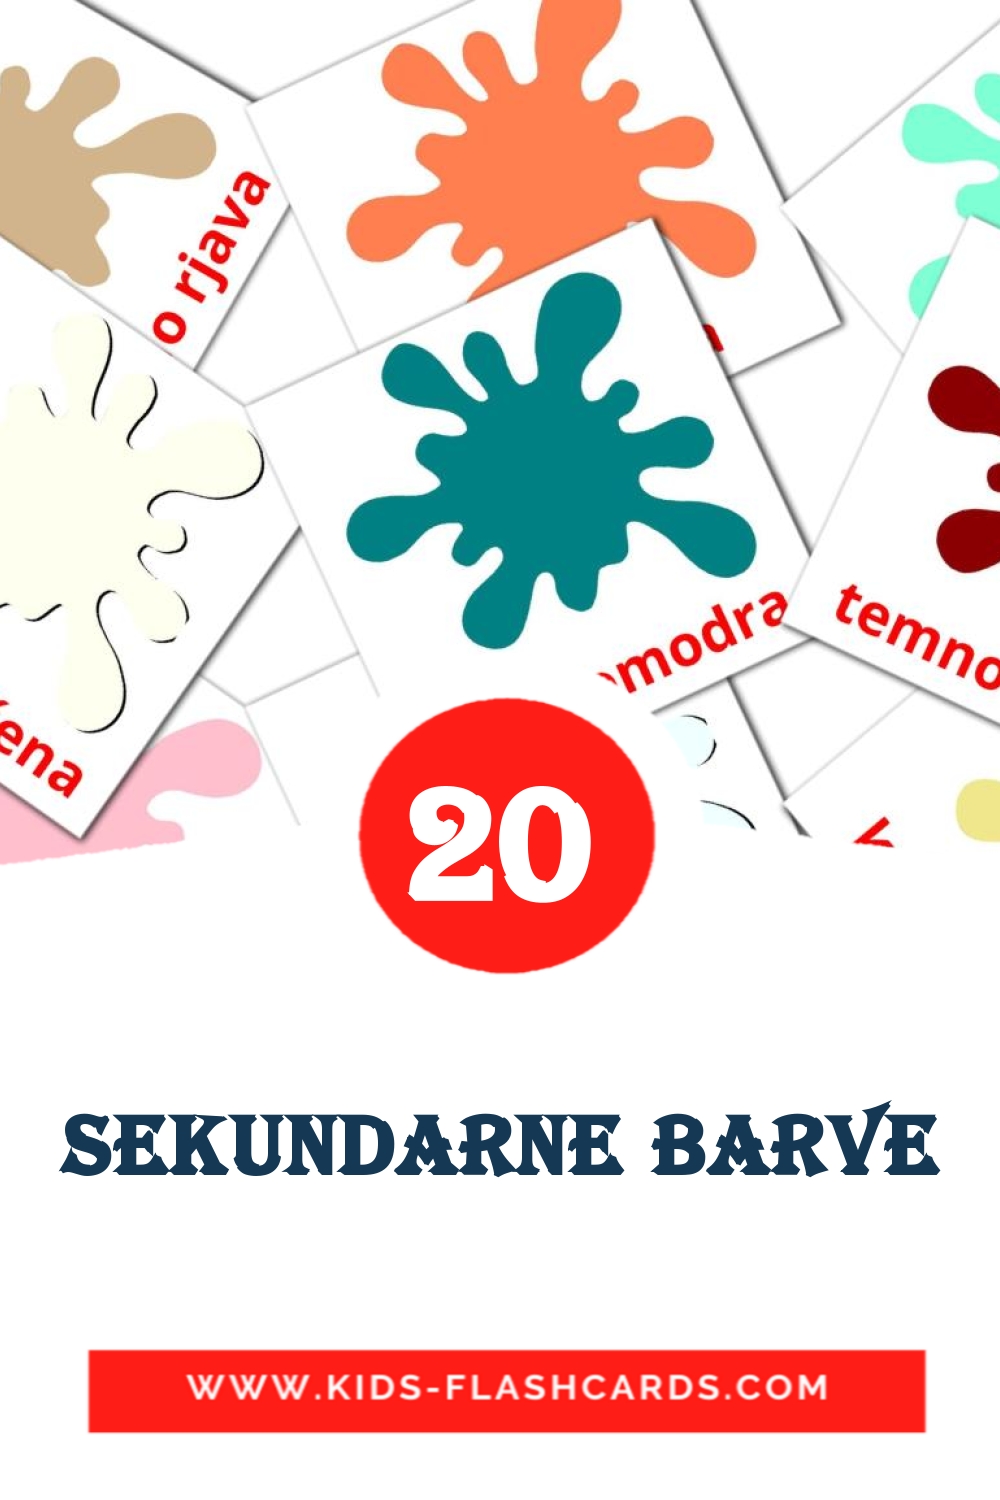 20 cartes illustrées de Sekundarne barve pour la maternelle en slovène